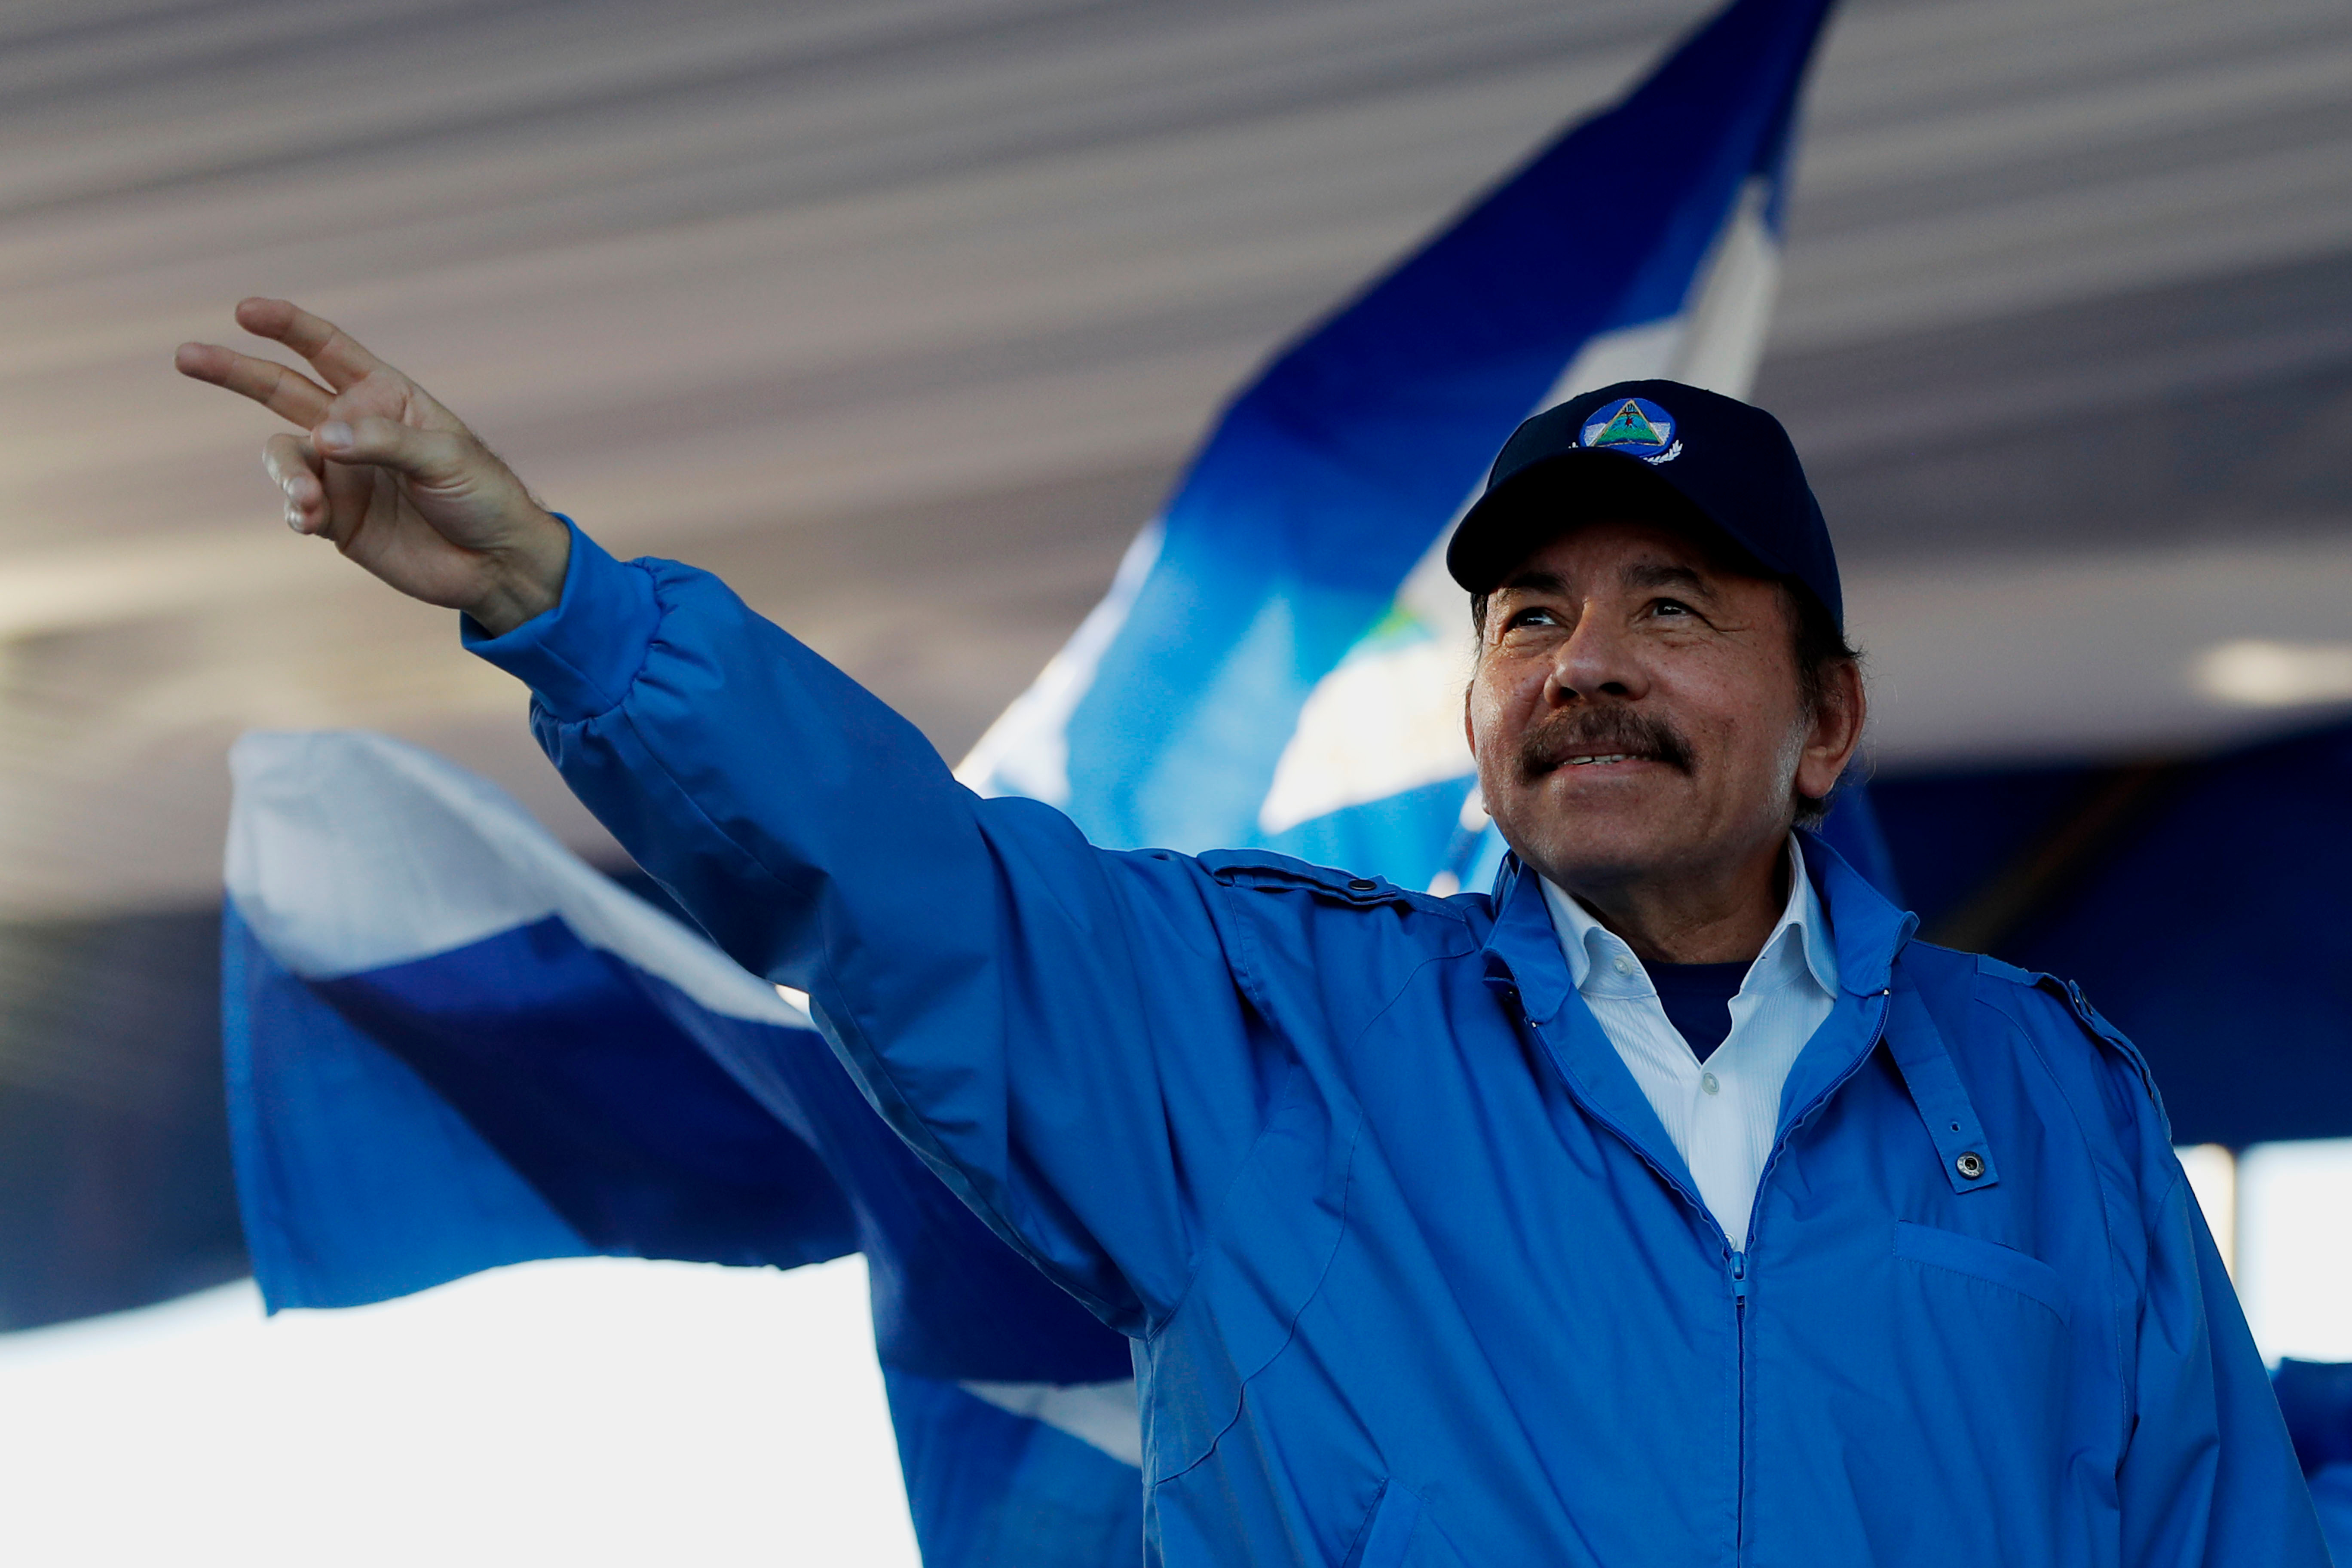 Foto de archivo de Daniel Ortega en un acto político en Nicaragua (EFE/Esteban Biba)